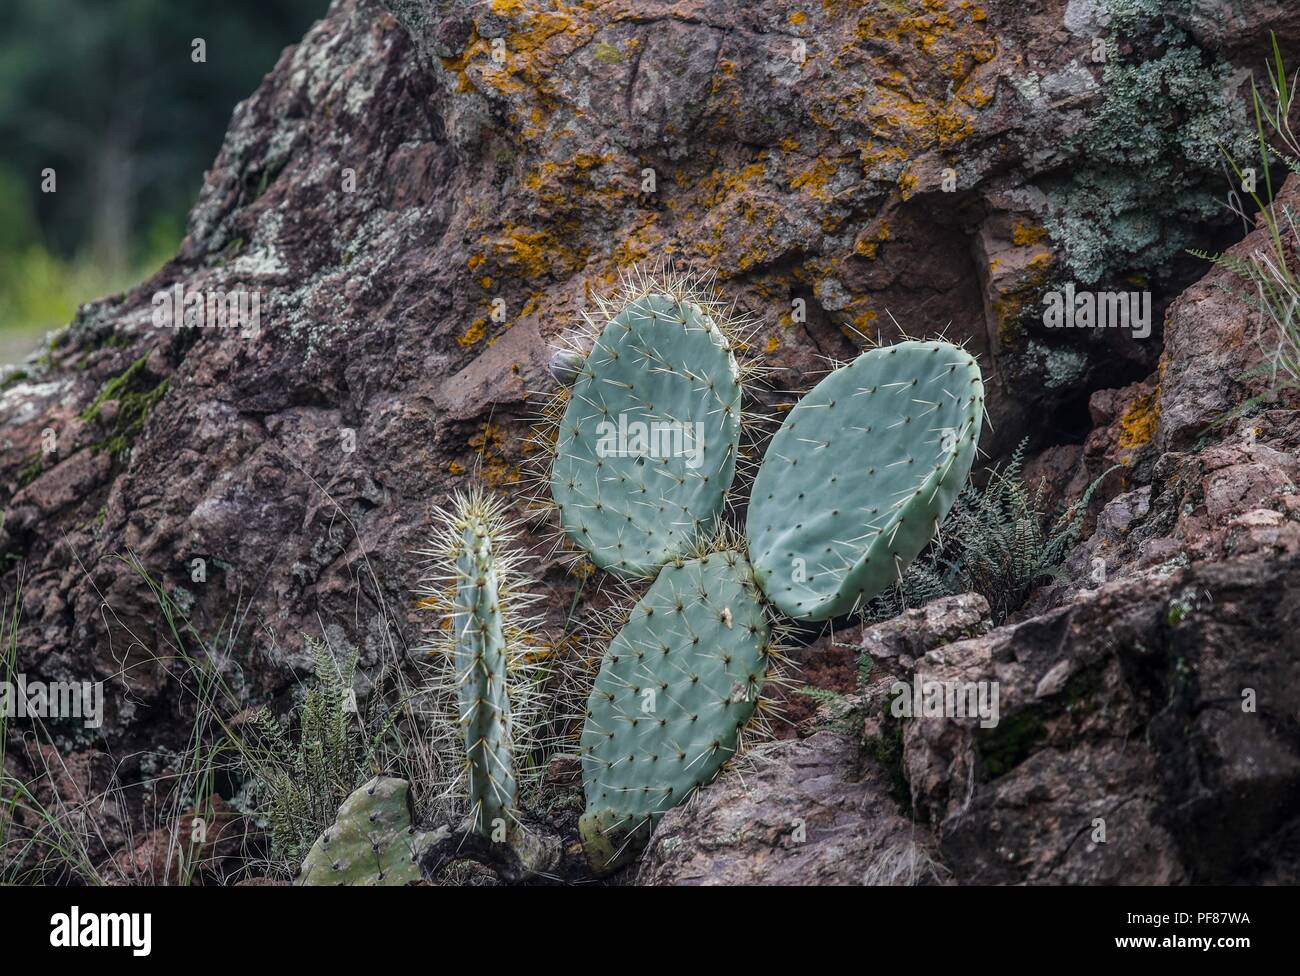 cactus, nopal, penca. ..... ................. .................  Expedición Discovery Madrense de GreaterGood ORG que recaba datos que  sirven como información de referencia para entender mejor las relaciones biológicas del Archipiélago Madrense y se usan para proteger y conservar las tierras vírgenes de las Islas Serranas Sonorenses. Expedición binacional aye une a colaboradores  de México y Estados Unidos con experiencias y especialidades de las ciencias biológicas  variadas, con la intención de aprender lo más posible sobre Mesa de Tres Ríos, la porción más norteña de la Sierra Madre Occide Stock Photo